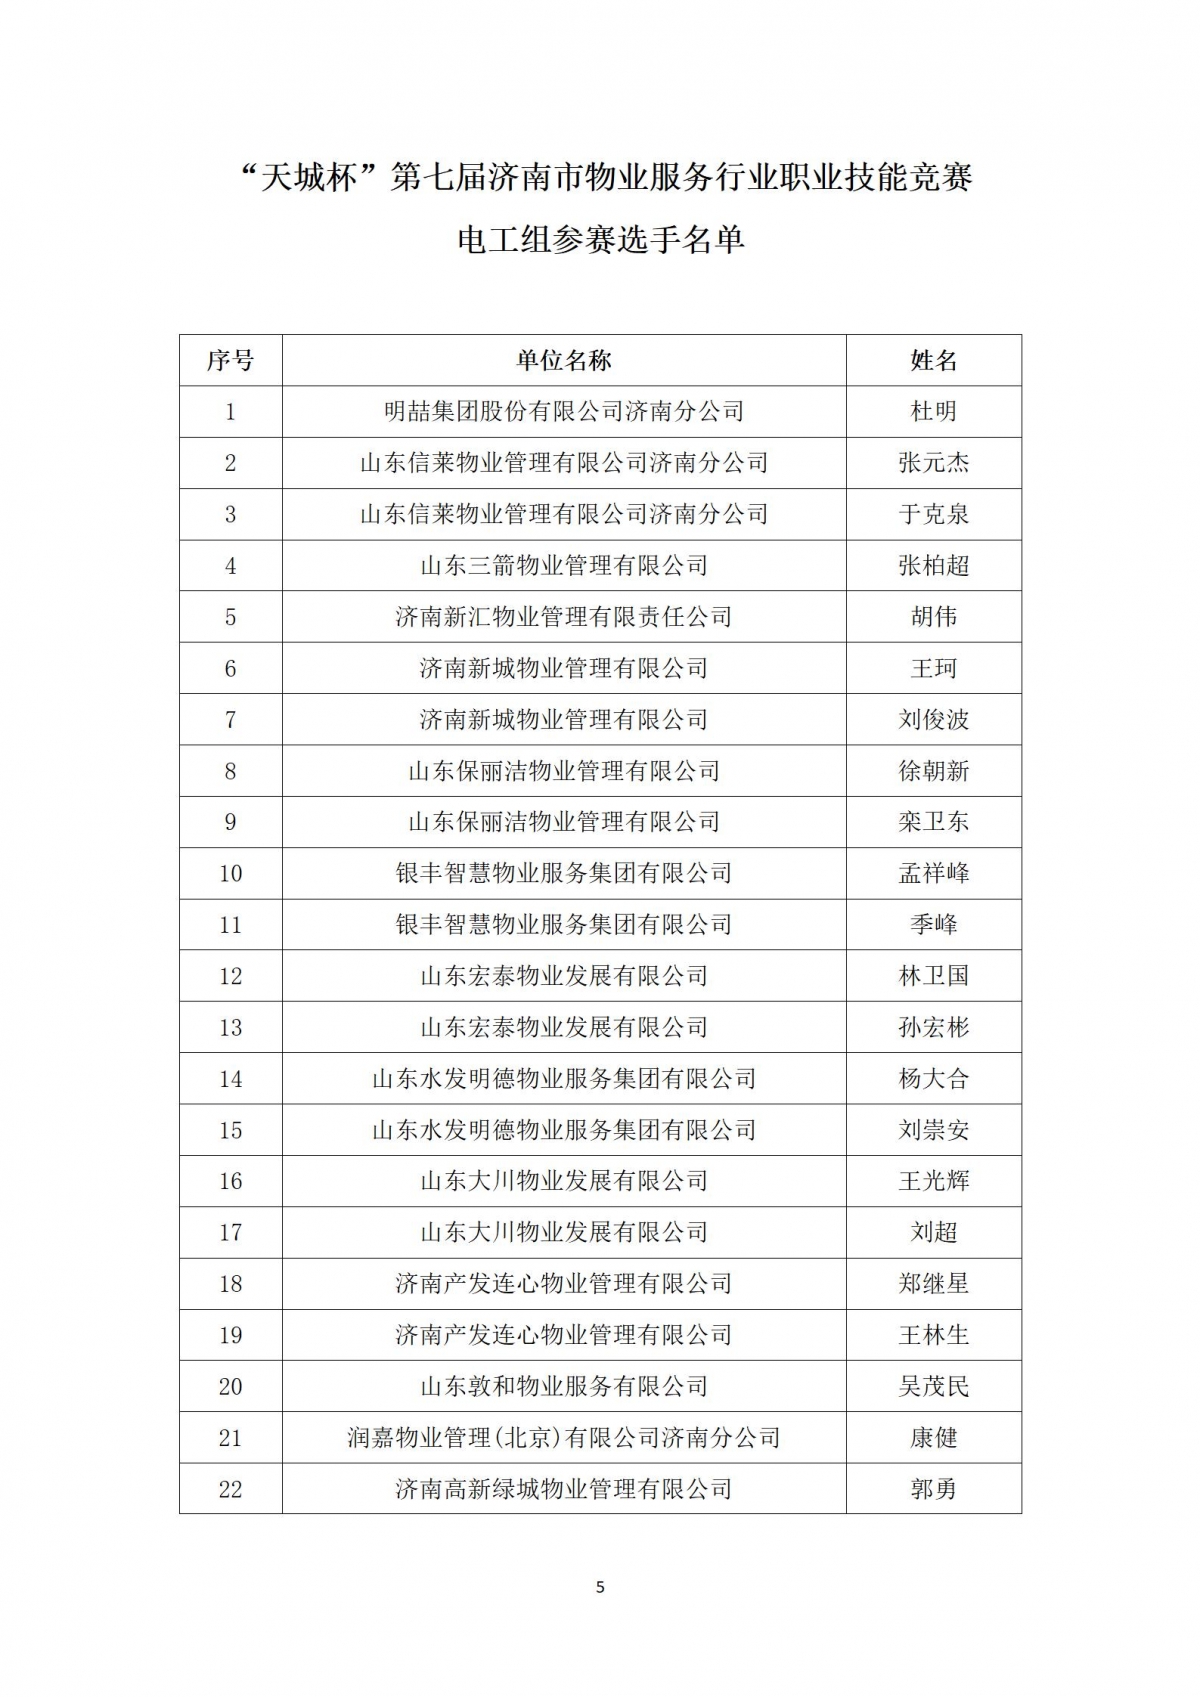 关于“天城杯”第七届济南市物业服务行业职业技能竞赛选手名单的公示_05